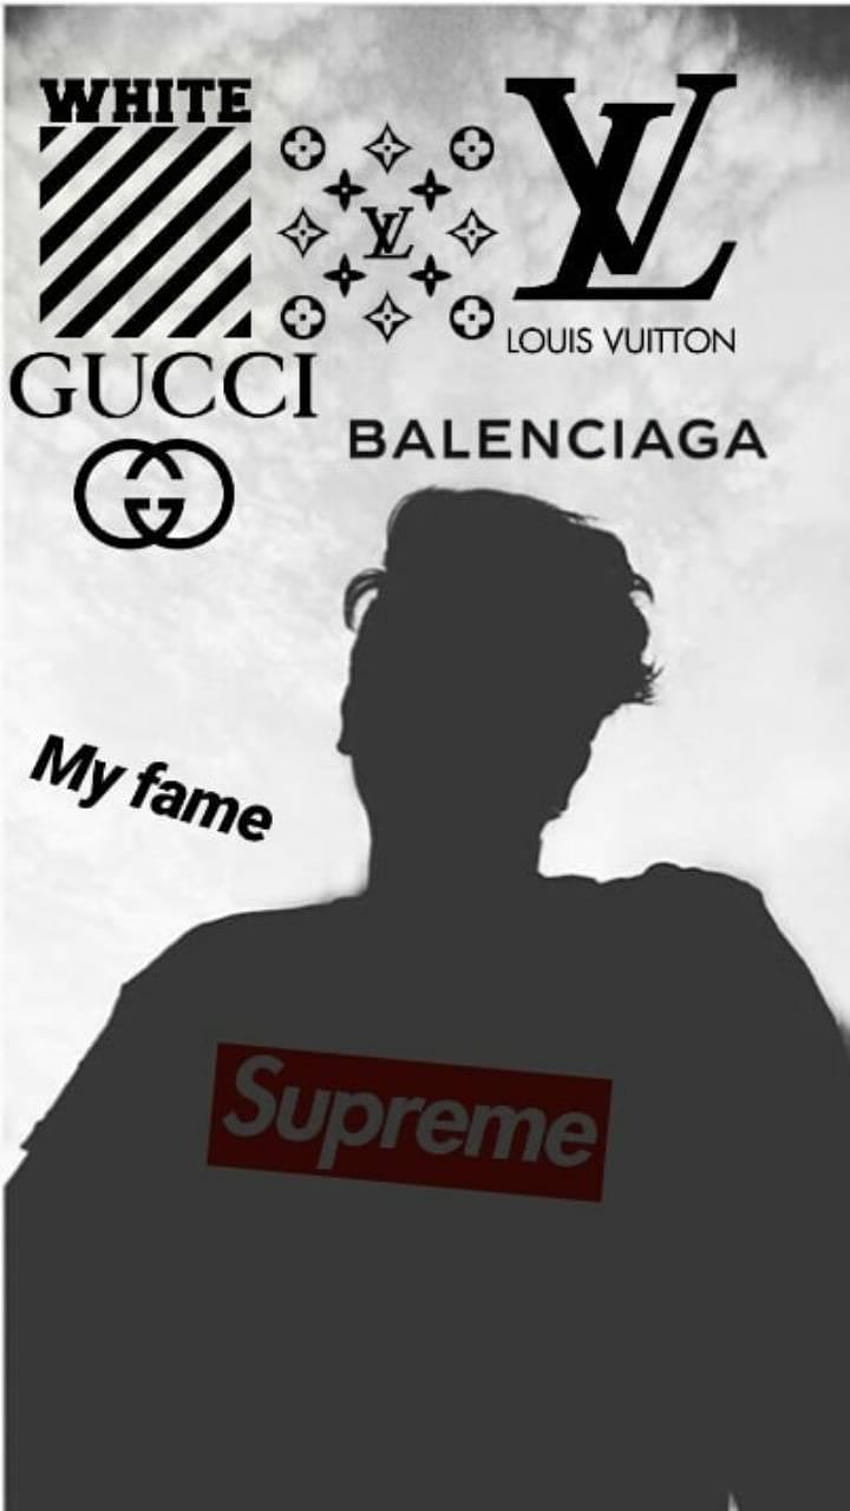 17 Gucci, Lv, Supreme ideas  supreme iphone wallpaper, hype